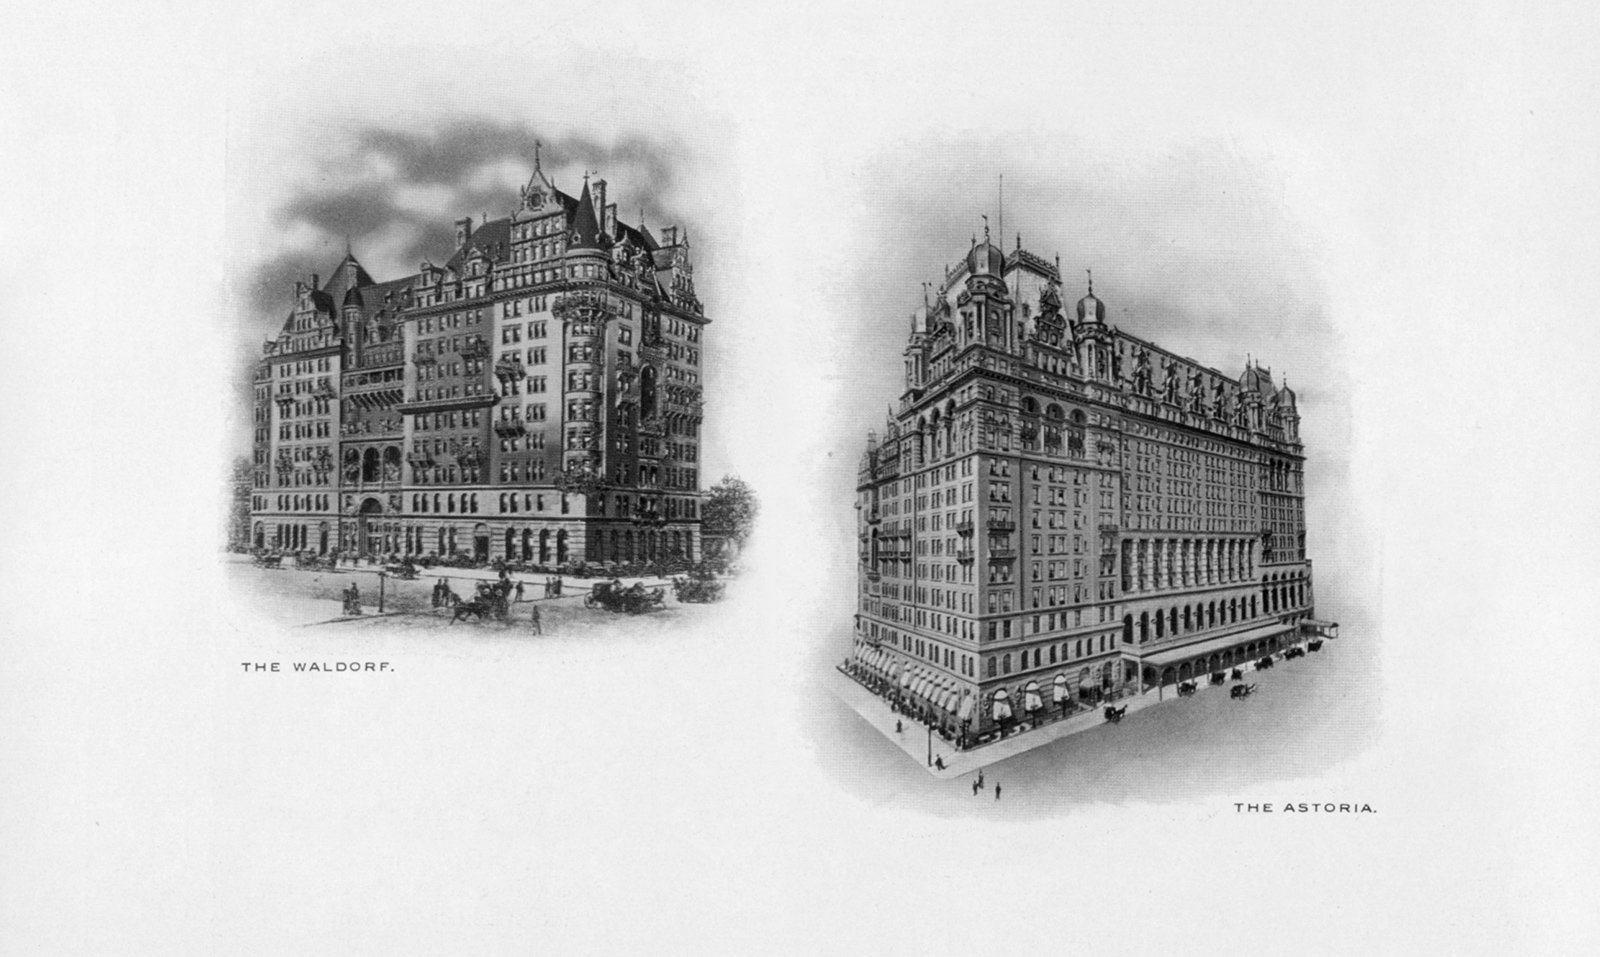 افتُتح فندق Waldorf الأصلي، ثم افتُتح فندق Waldorf بجواره بعد ذلك بأربع سنوات - 1893